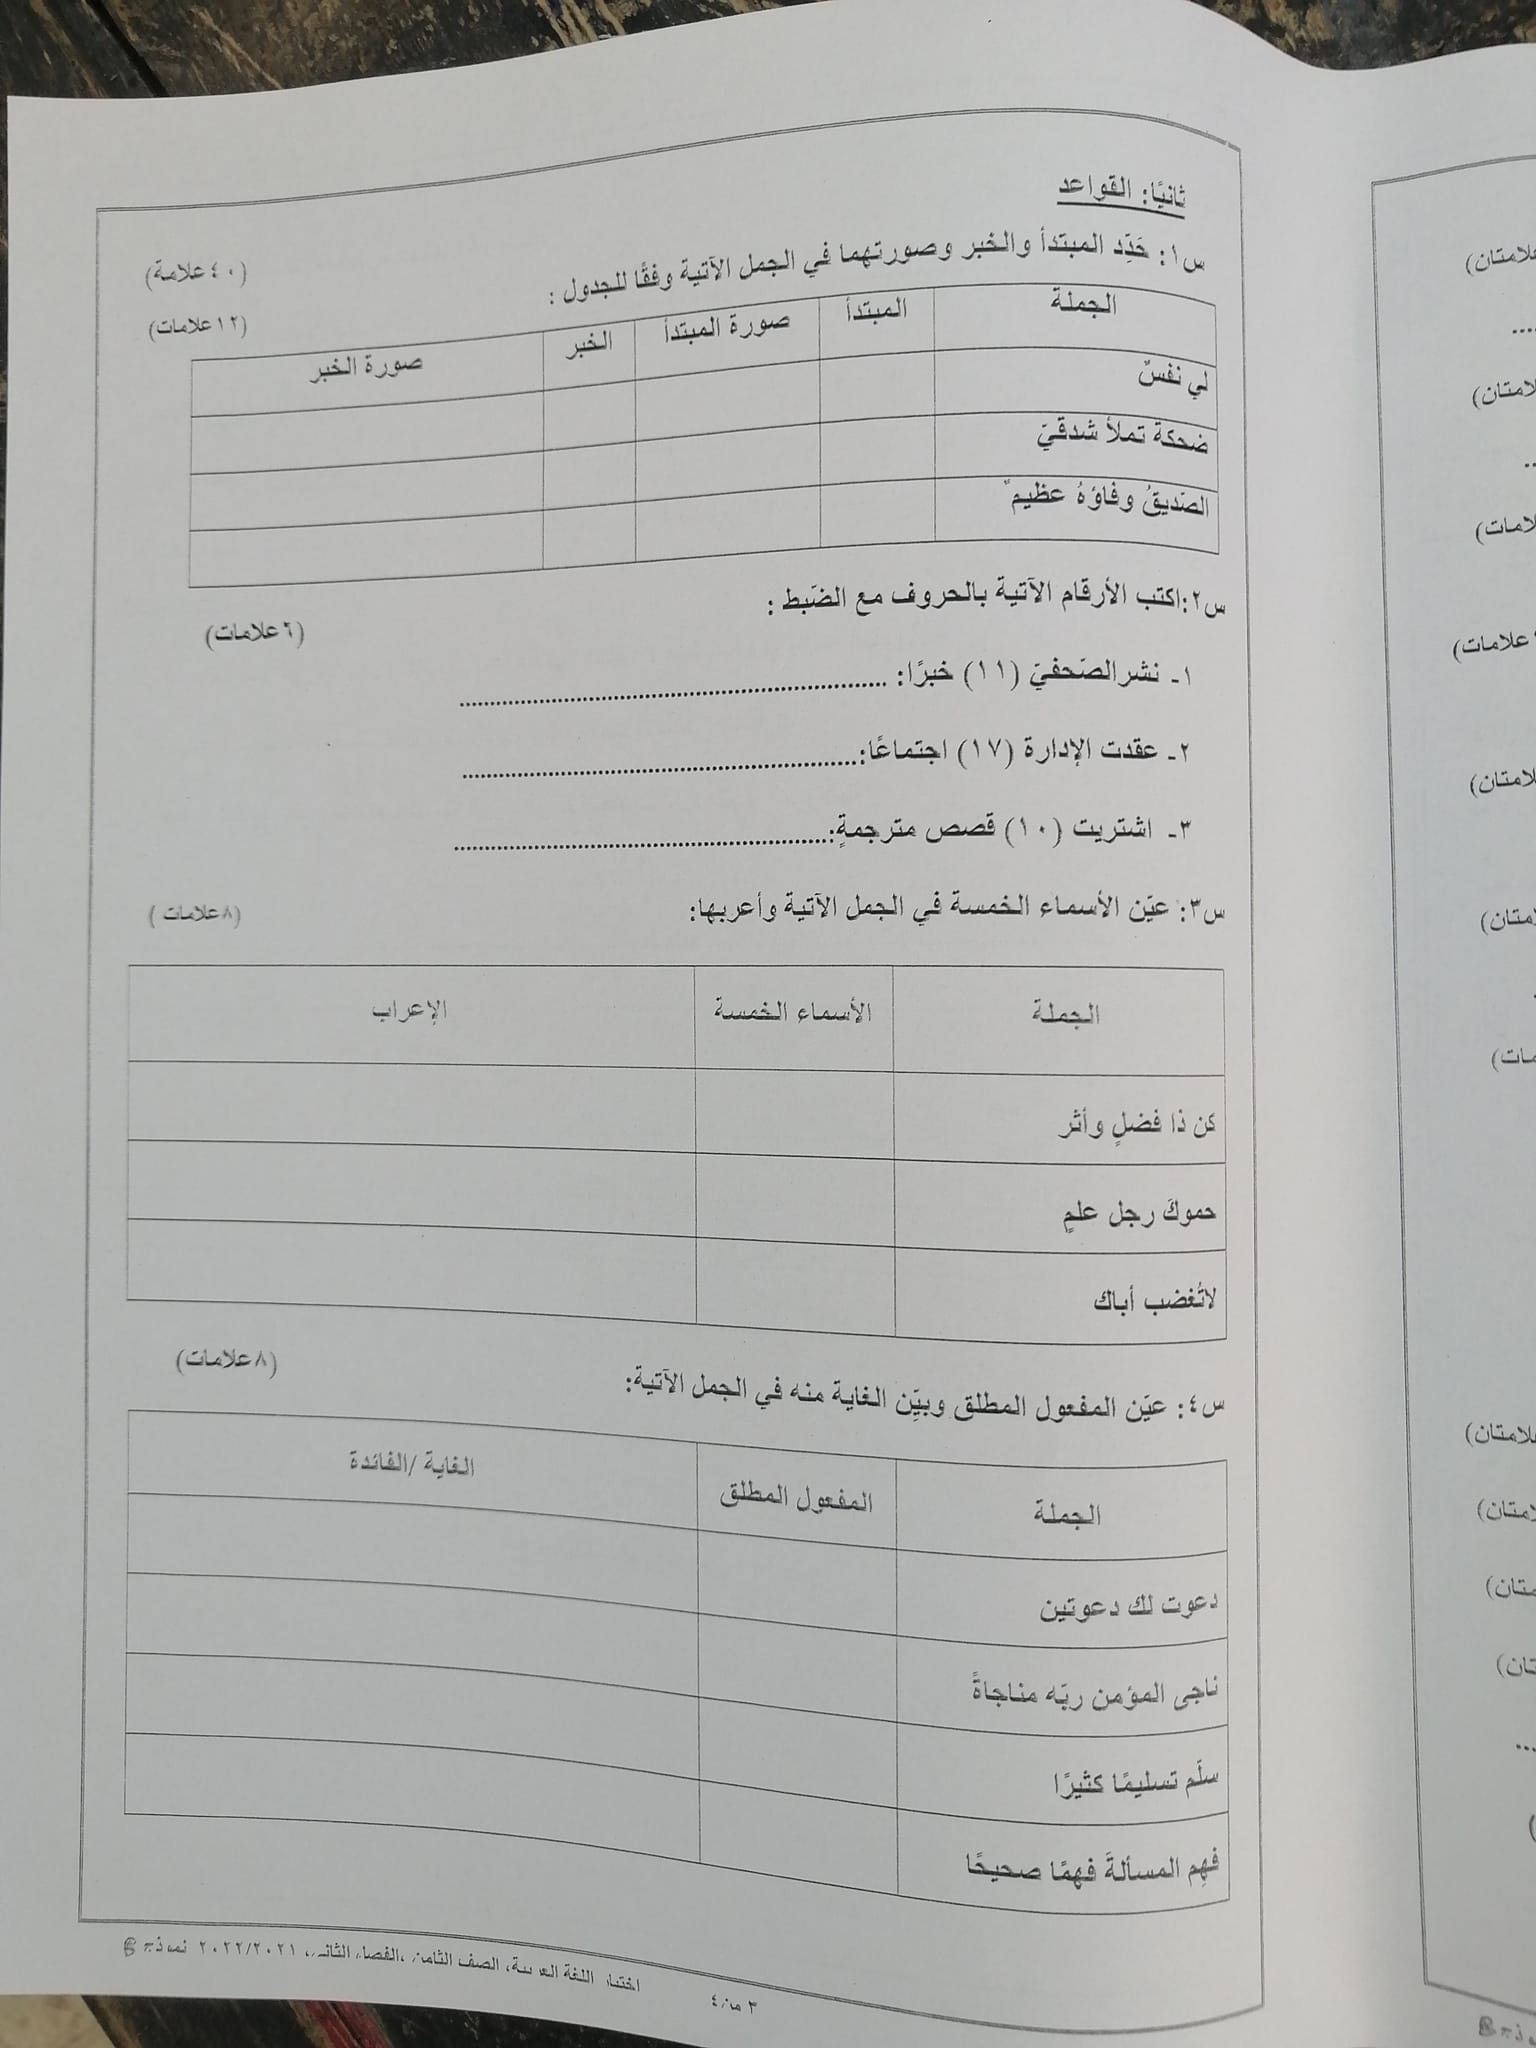 3 صور امتحان نهائي اللغة العربية للصف الثامن الفصل الثاني 2022 نموذج B وكالة.jpg